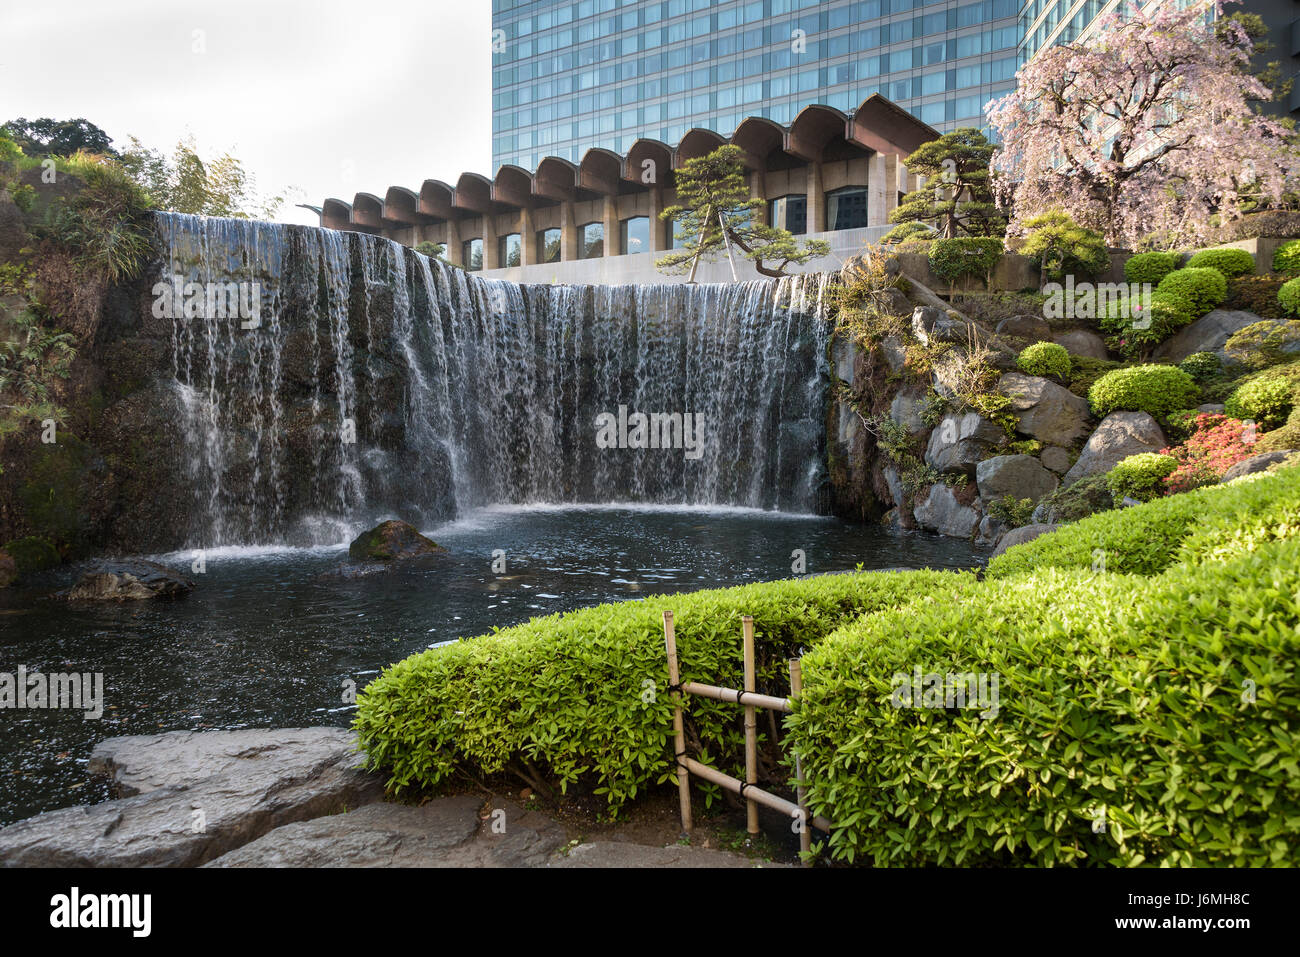 New Otani Hotel jardines japoneses.típico jardín japonés en el centro de Tokio. Foto de stock